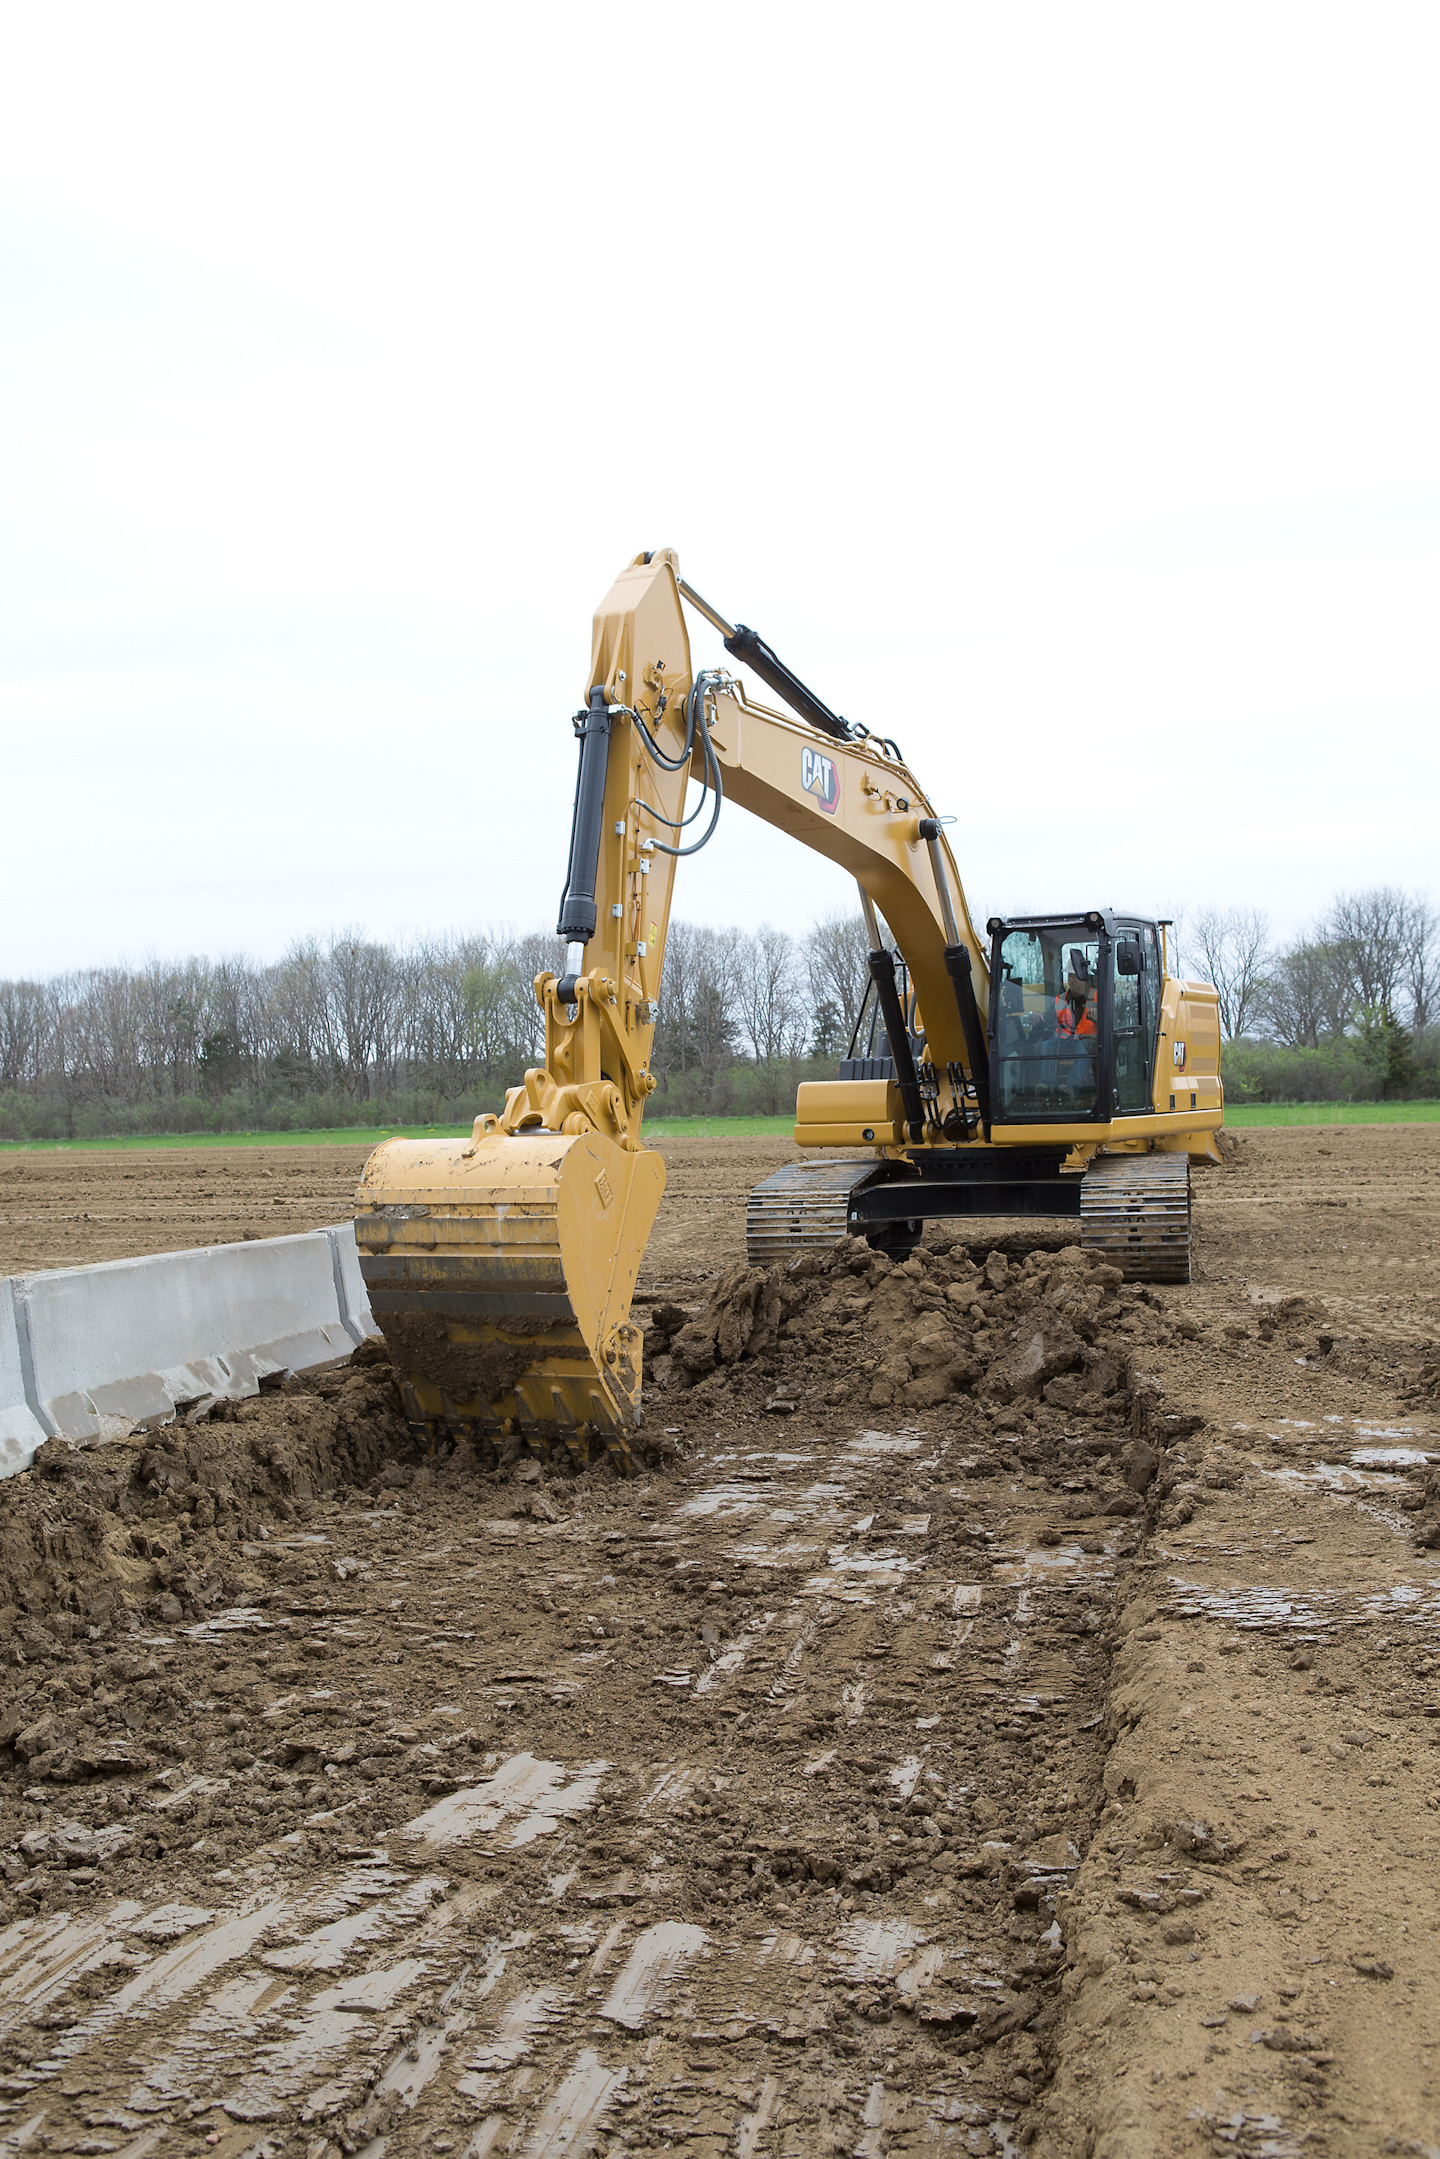 New Cat 326 Next Gen Excavator Improves Operator Efficiencies up to 45%